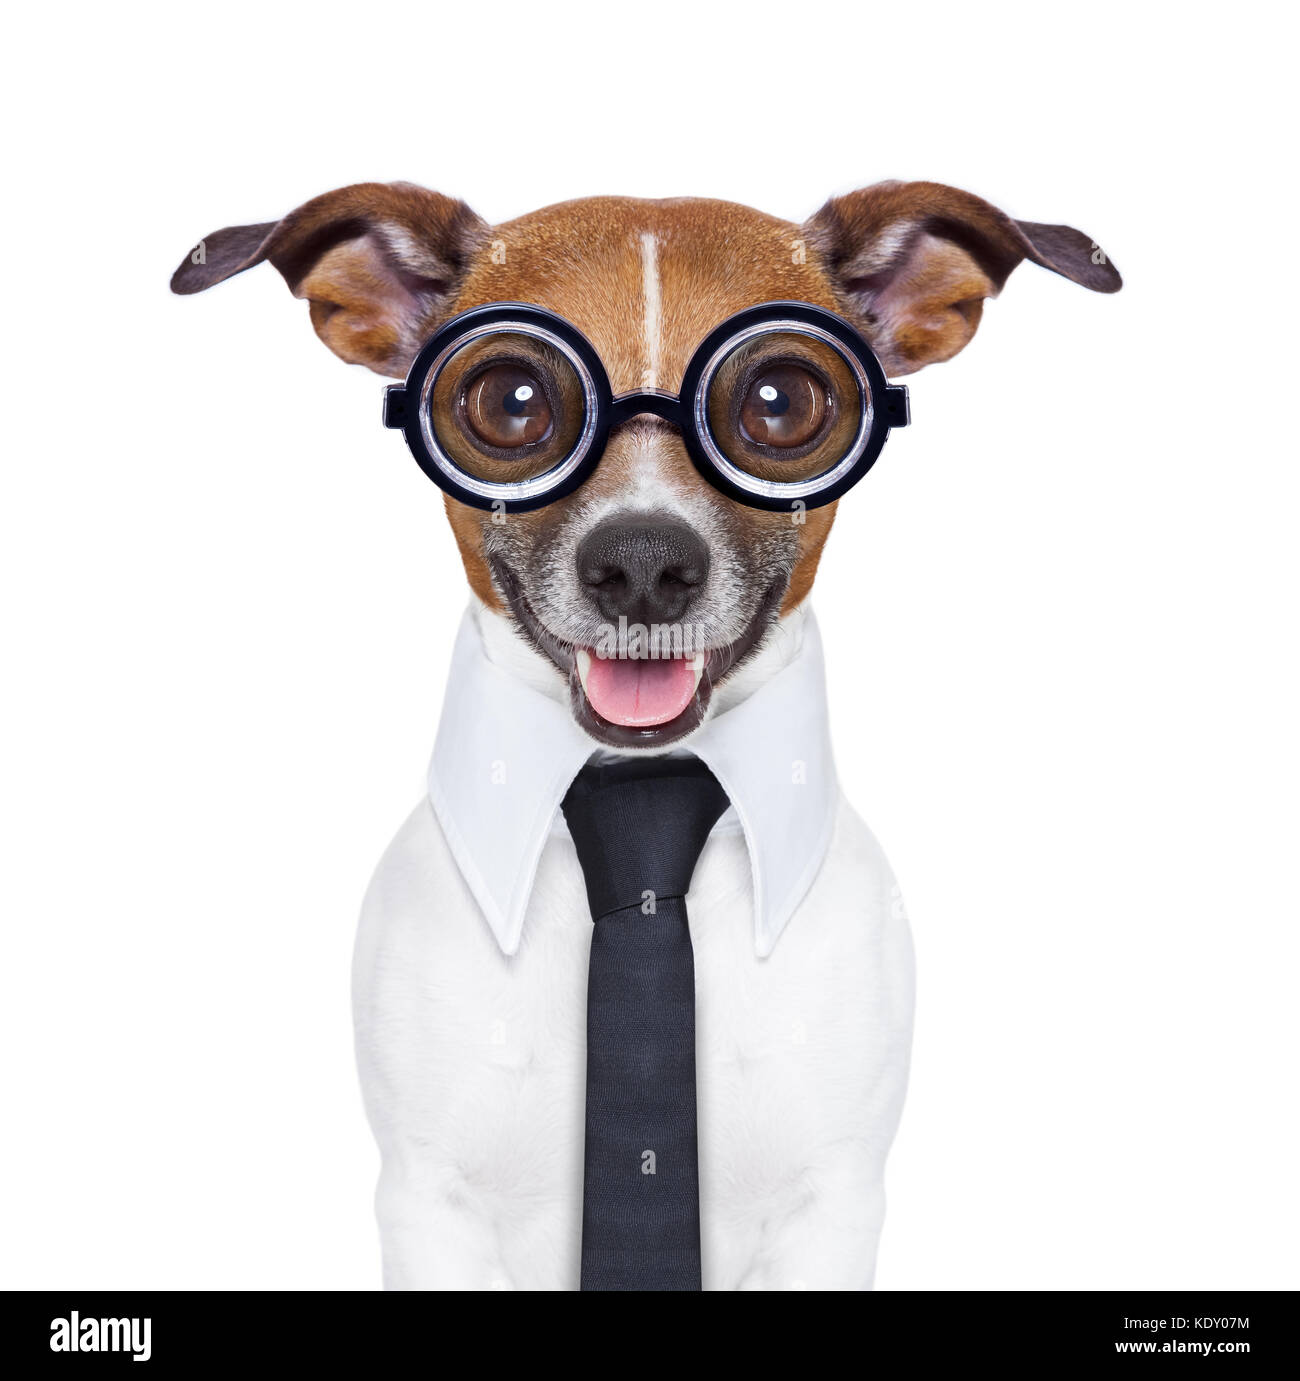 Stumme business Hund mit lustigen Brillen und Anzug Stockfotografie - Alamy